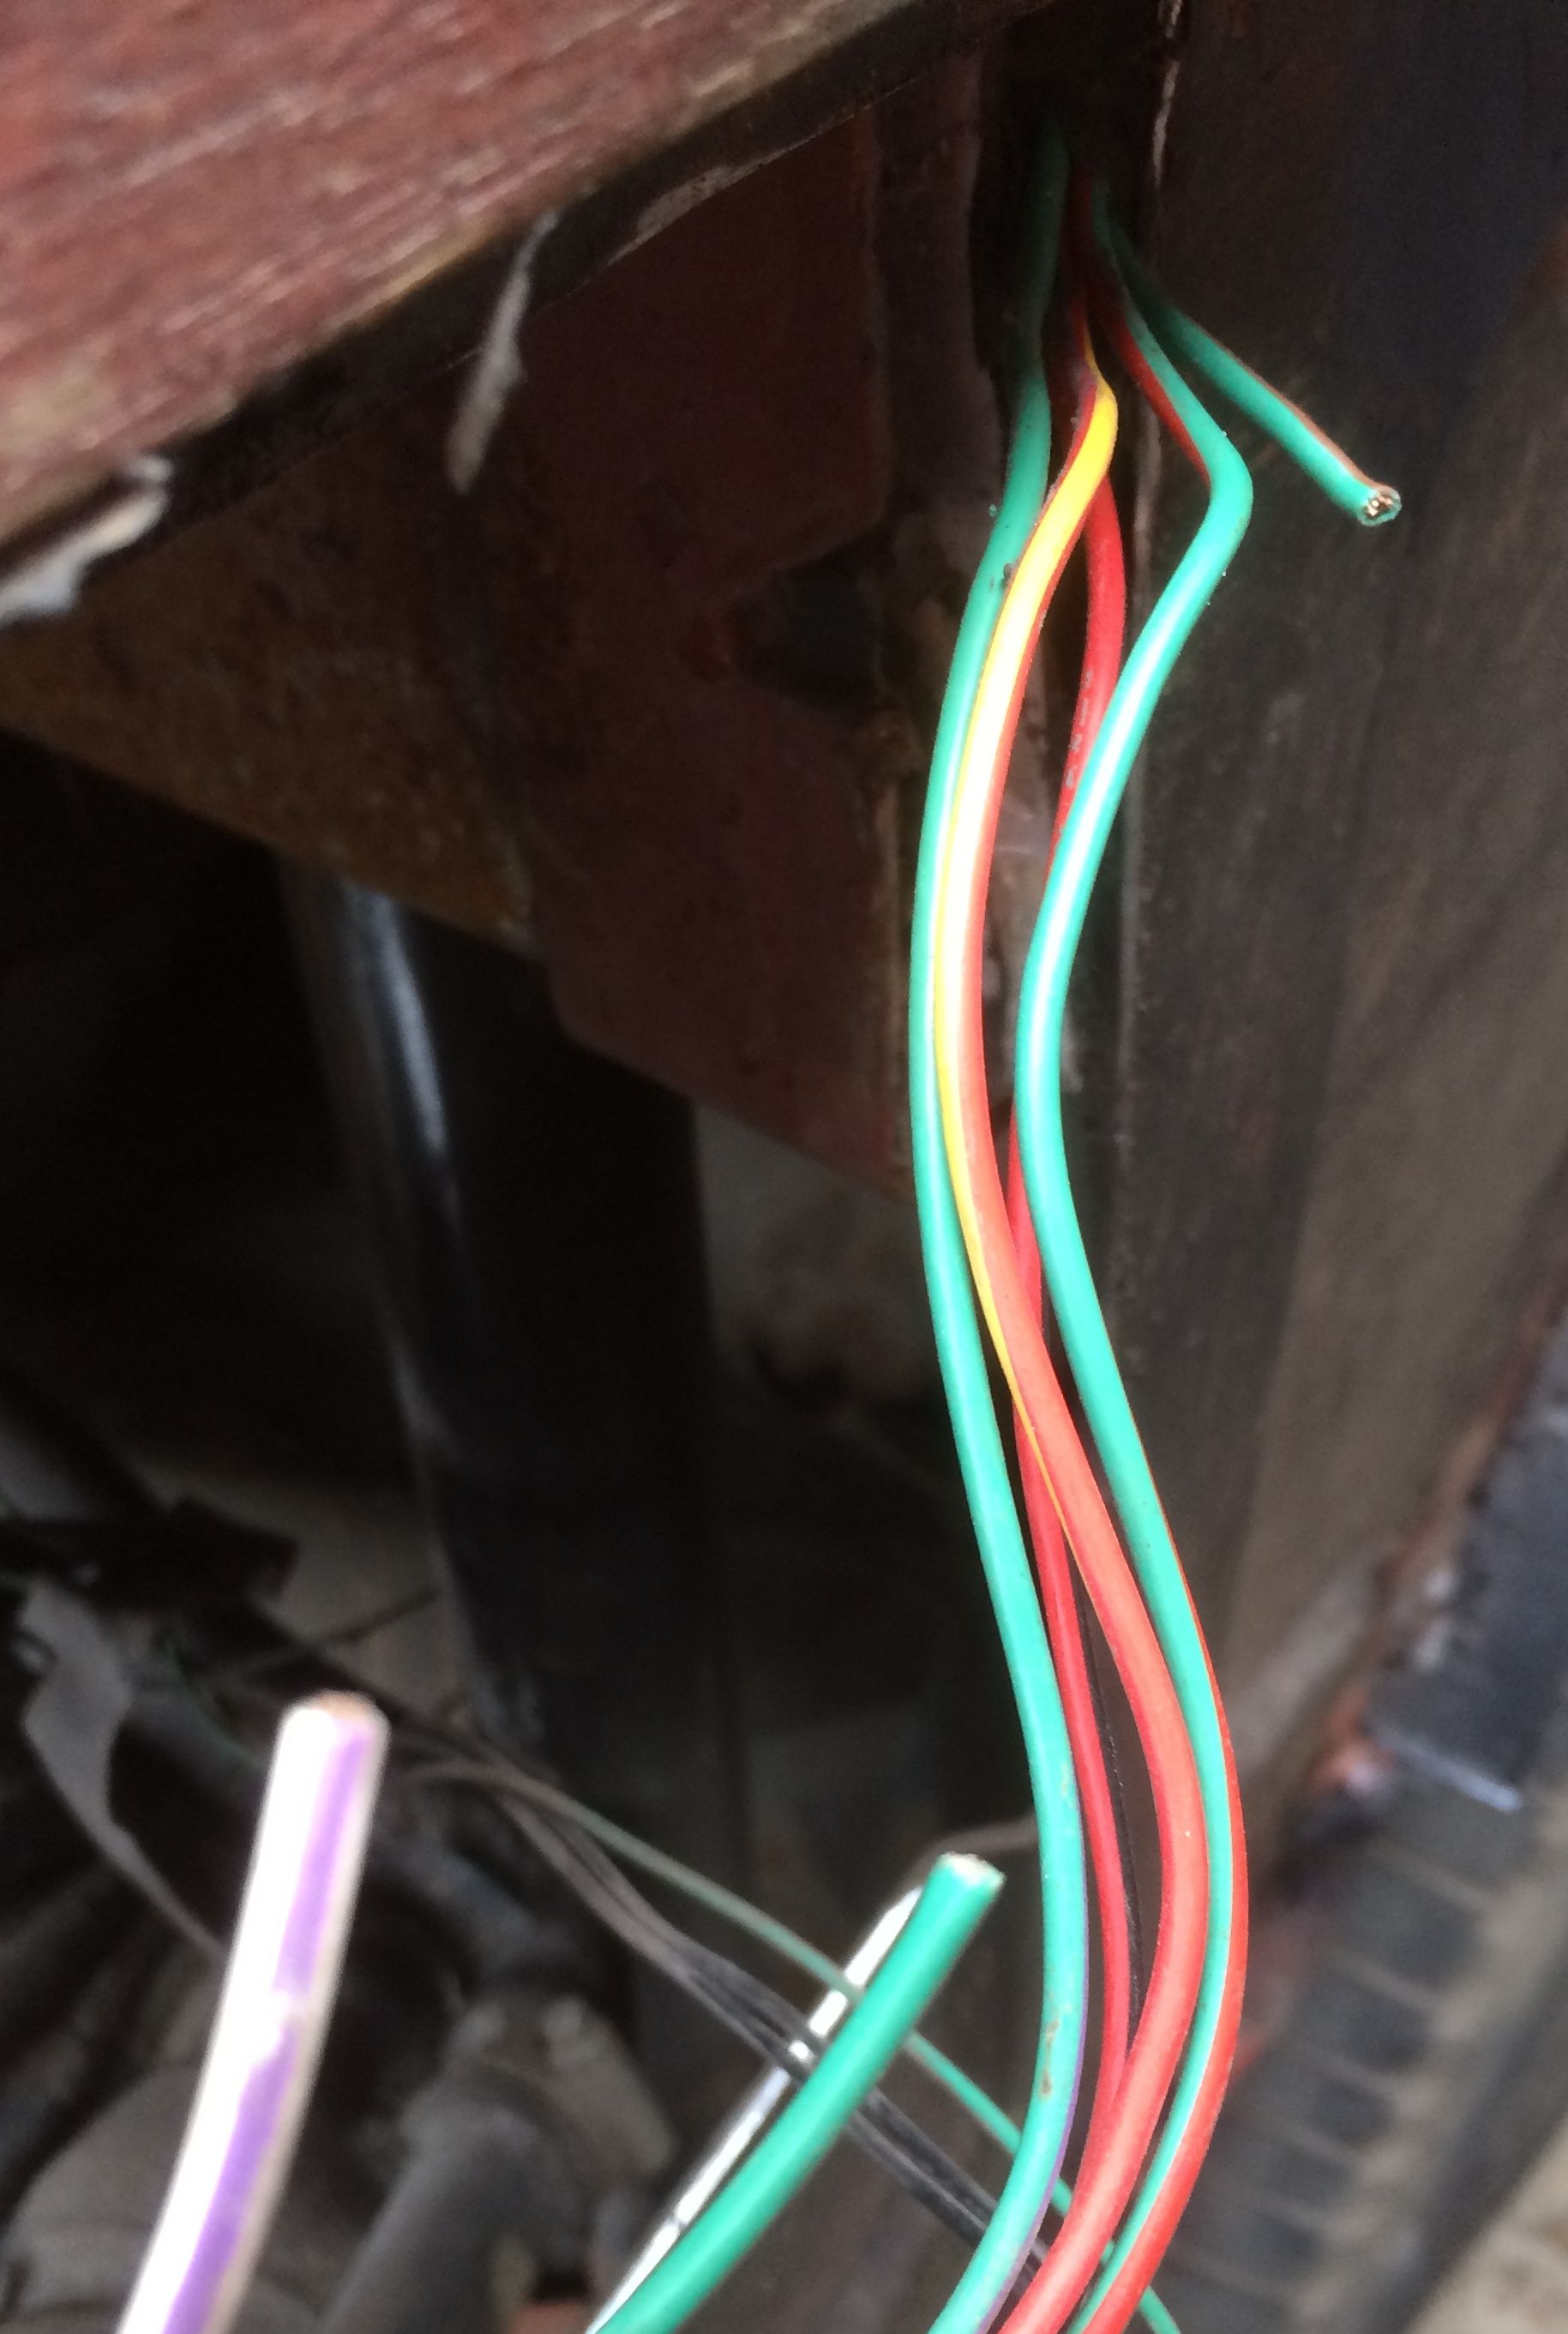 NS cut wiring by fuel access hatch.JPG